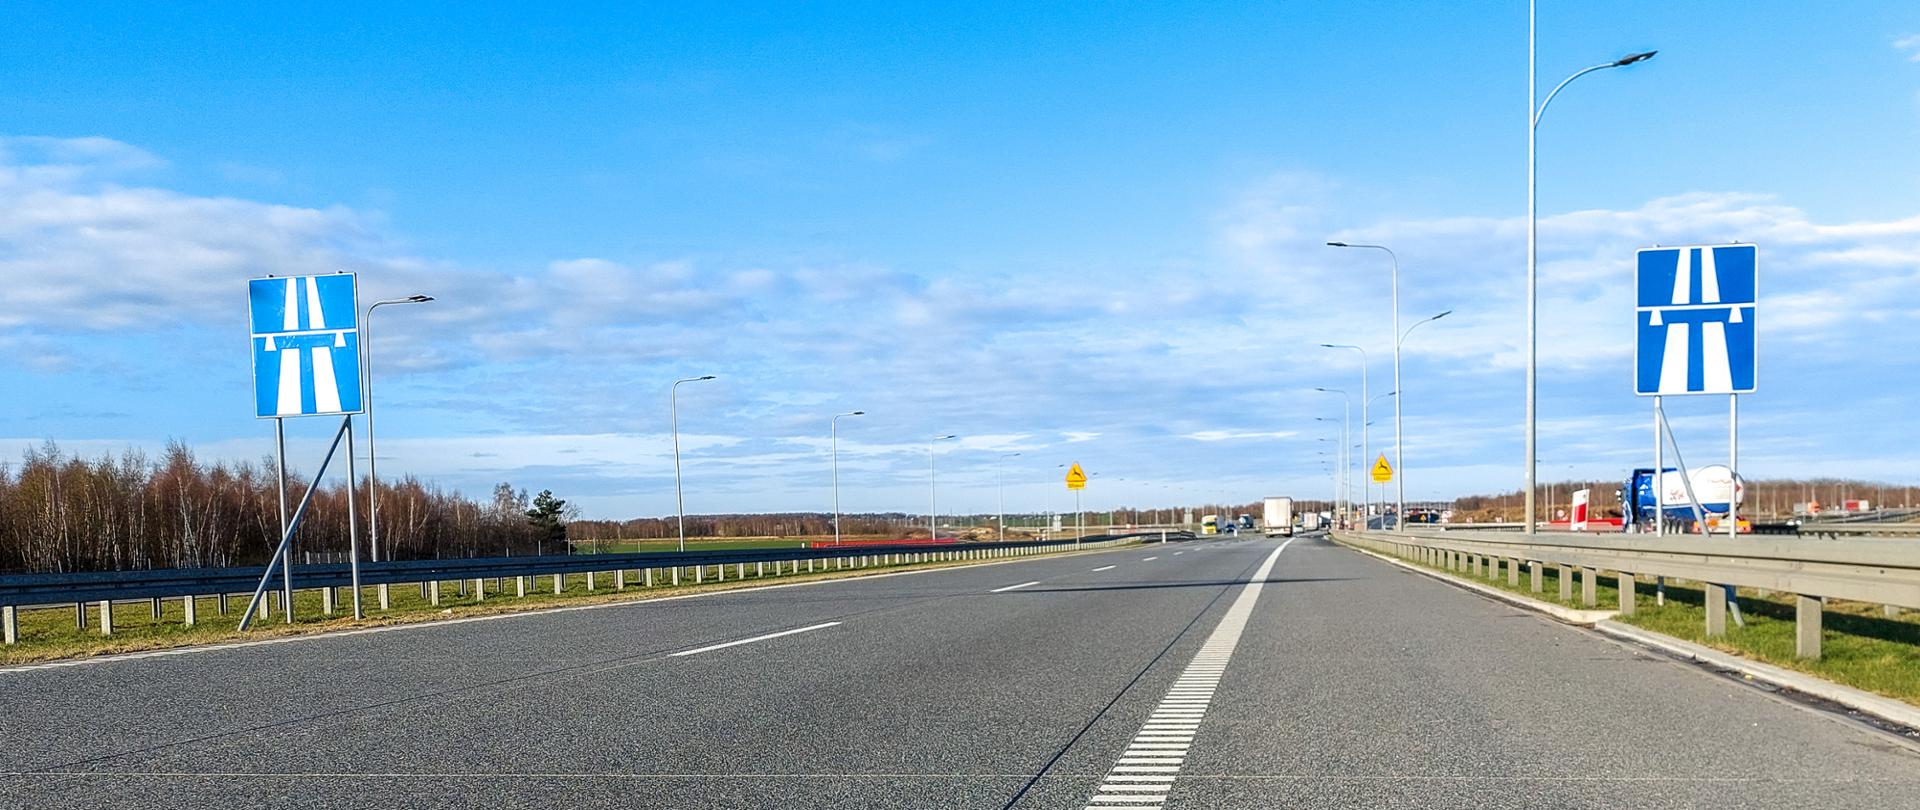 Fotografia z poziomu terenu jezdni autostrady A1. Przy autostradzie ustawiono znaki informujące o początku autostrady.